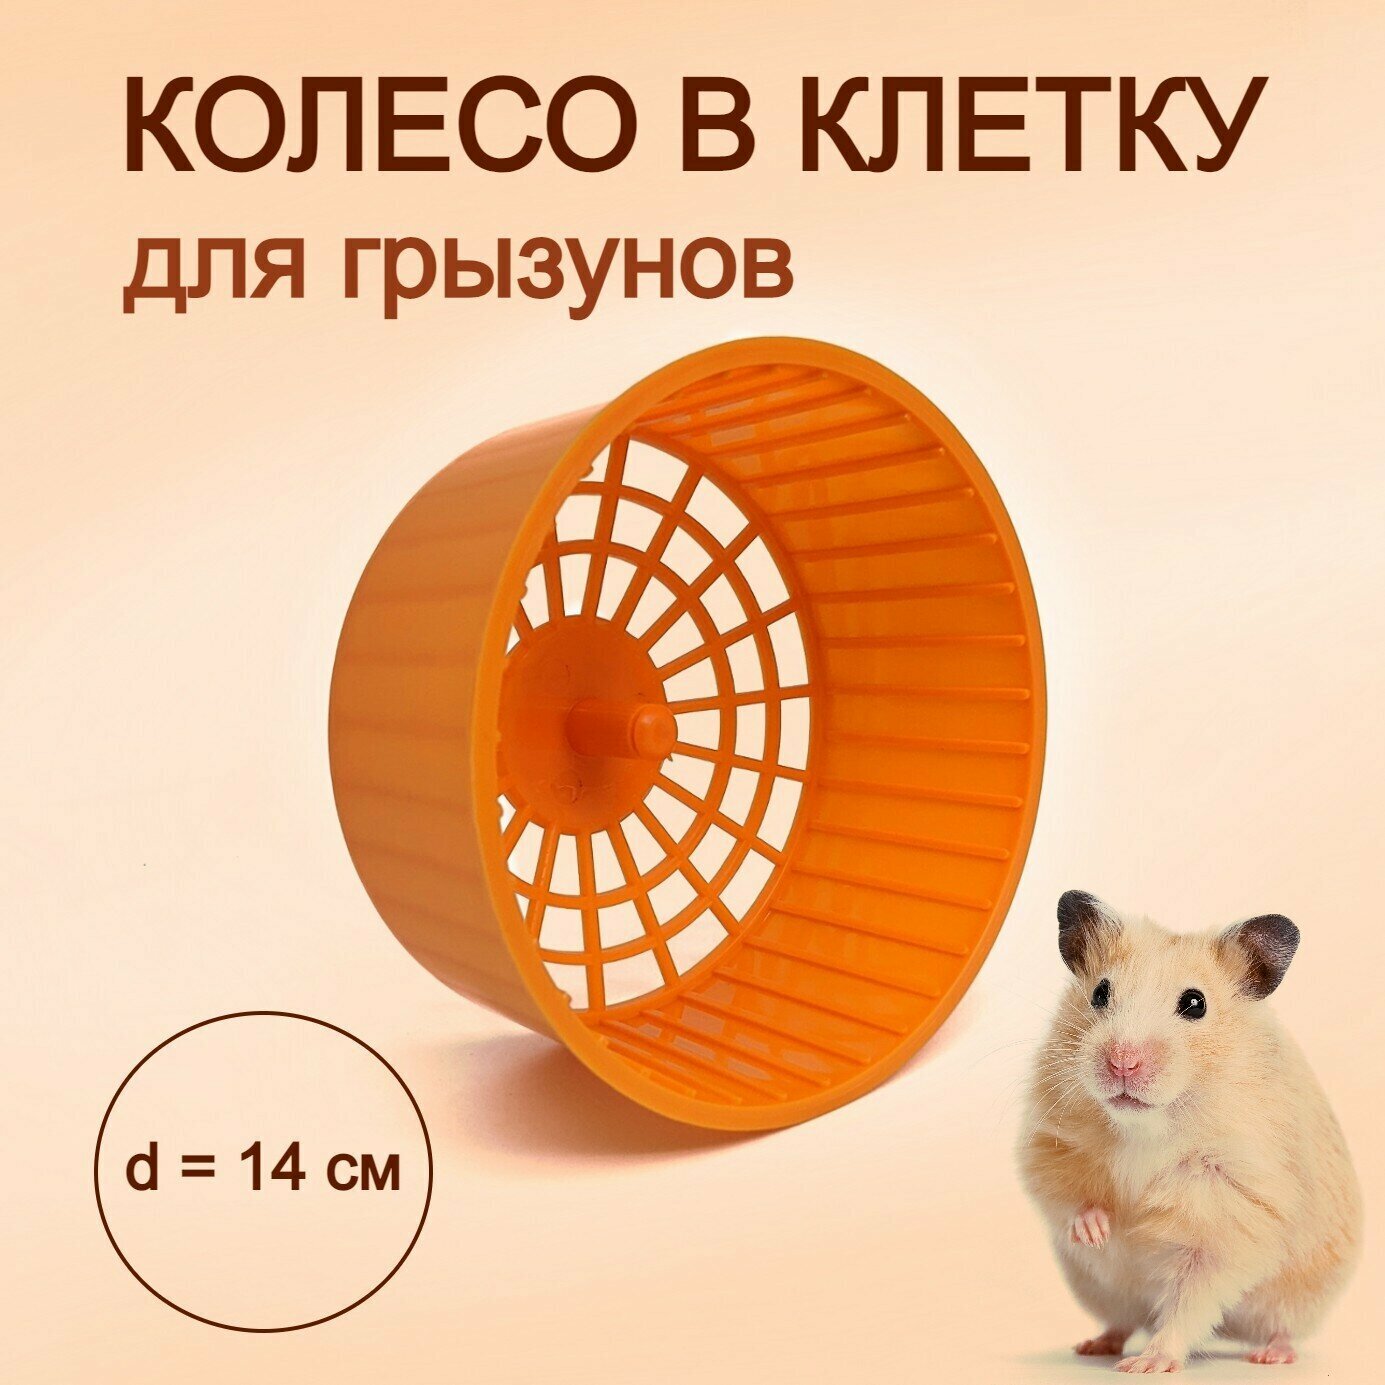 Колесо для хомяка, грызунов, крыс, мышей, песчанок бесшумное пластиковое в клетку беговое 14 см, оранжевое